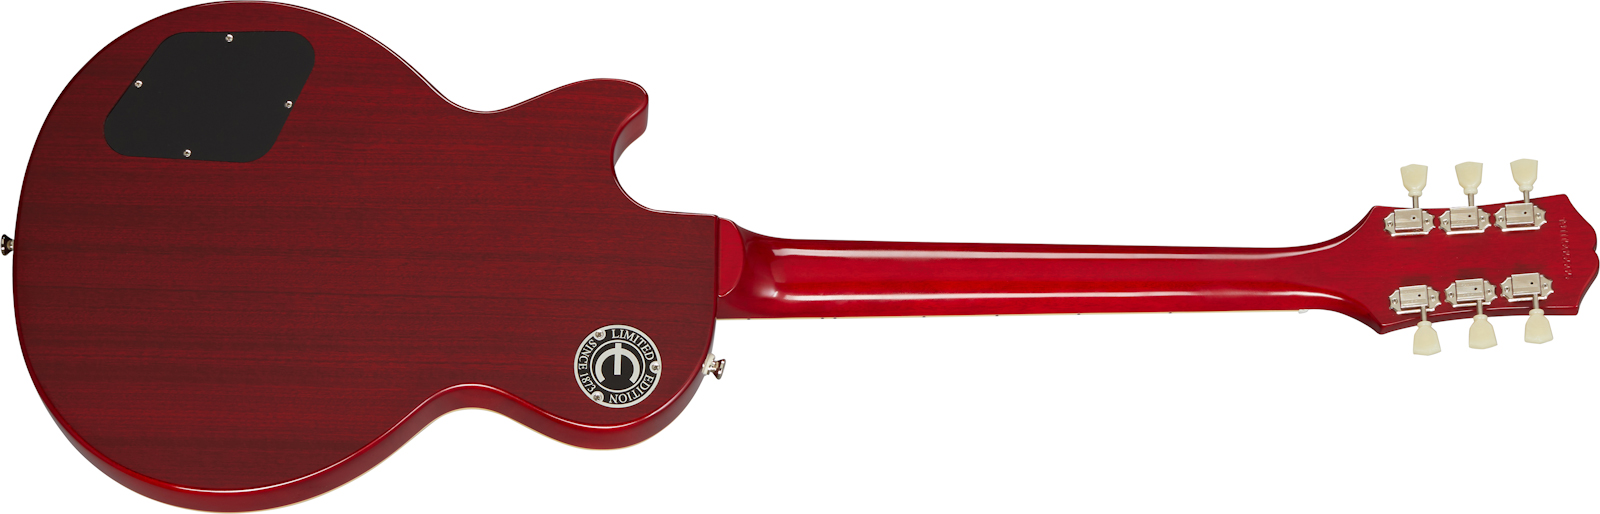 Epiphone Les Paul Standard 1959 Outfit 2h Ht Rw - Aged Dark Cherry Burst - Guitare Électrique Single Cut - Variation 1